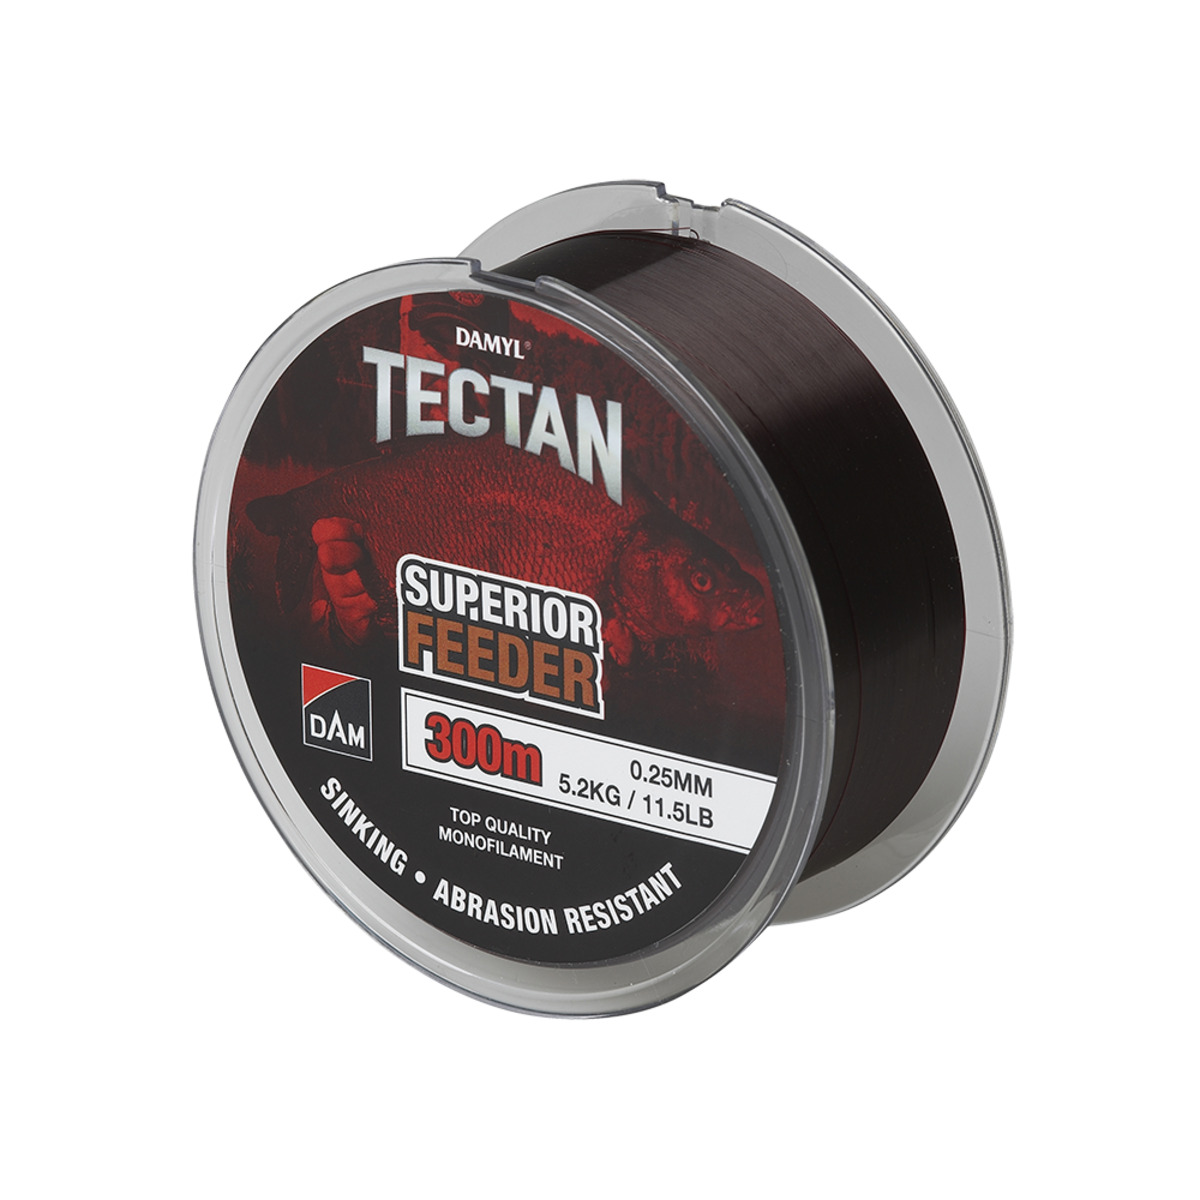 Dam Tectan Superior Feeder 300m - 0.18MM 2.7KG 6LBS BROWN